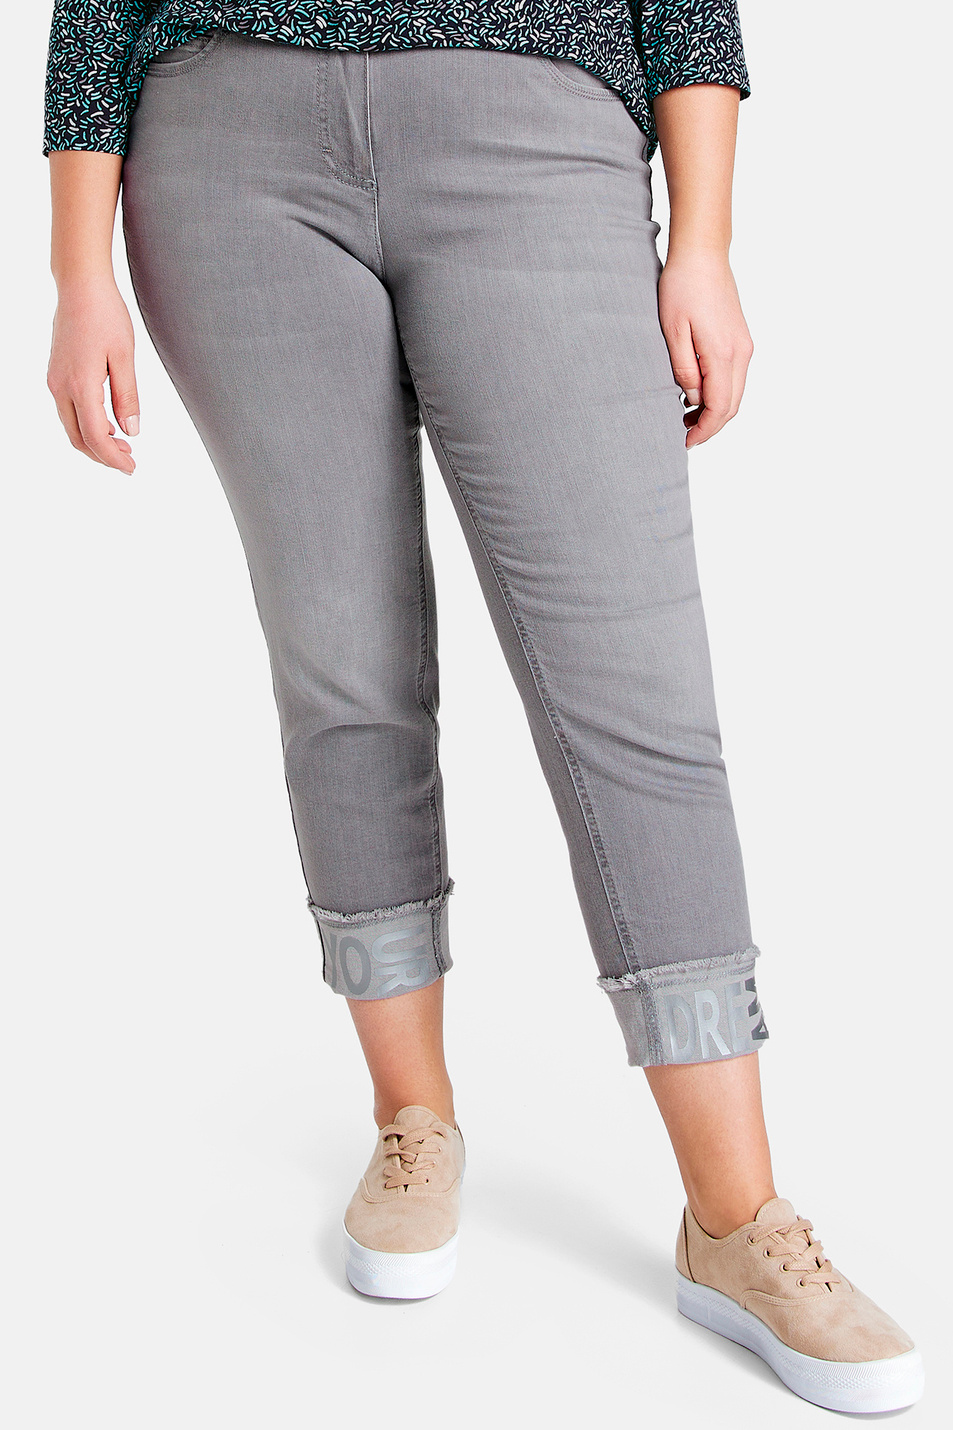 Samoon Укороченные джинсы Betty с отворотом (цвет ), артикул 620008-21206 | Фото 3